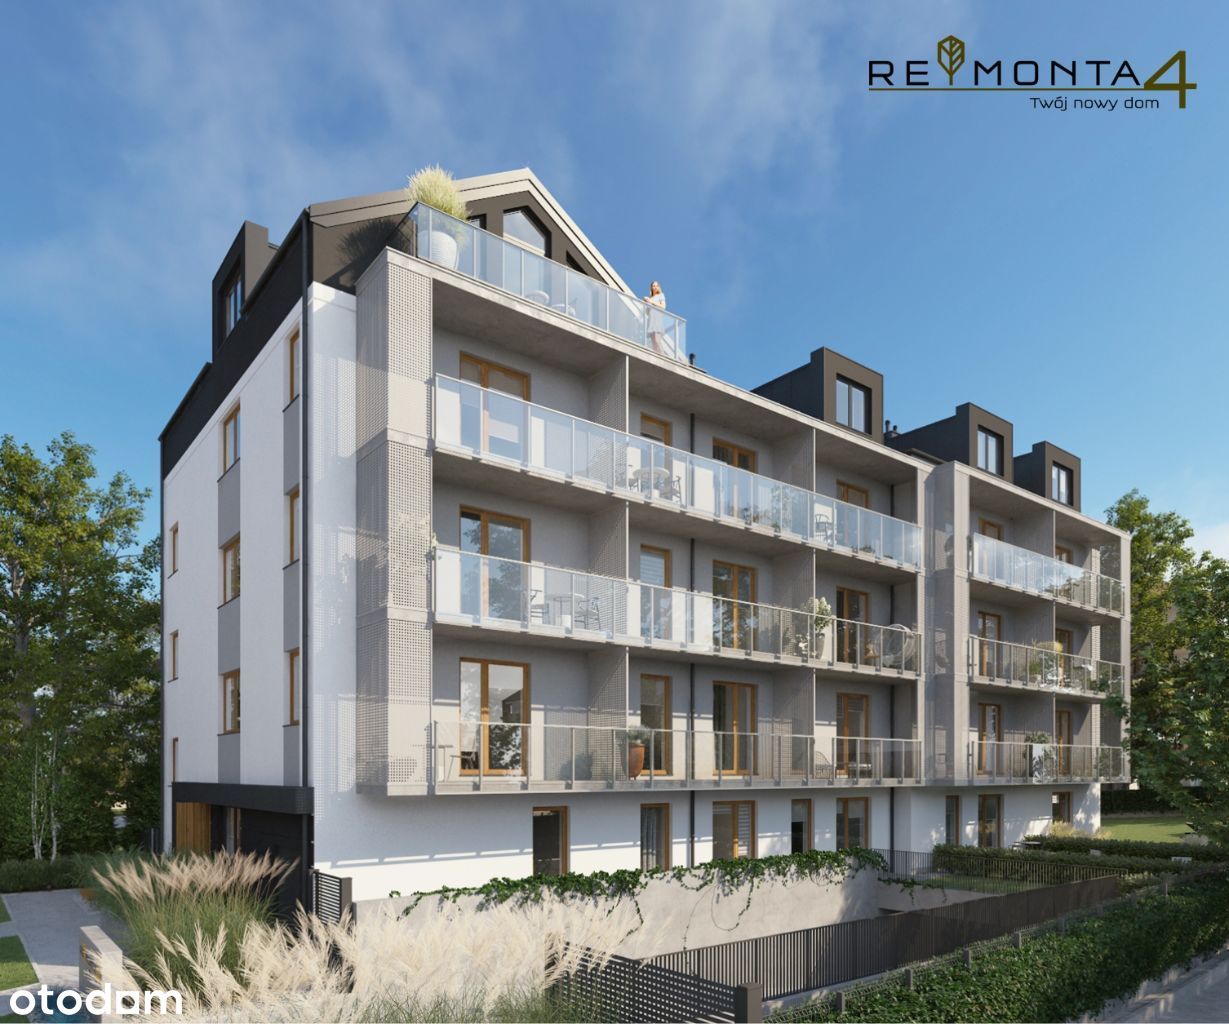 Reymonta 4 - mieszkanie 38,91 m2 + ogródek 43 m2